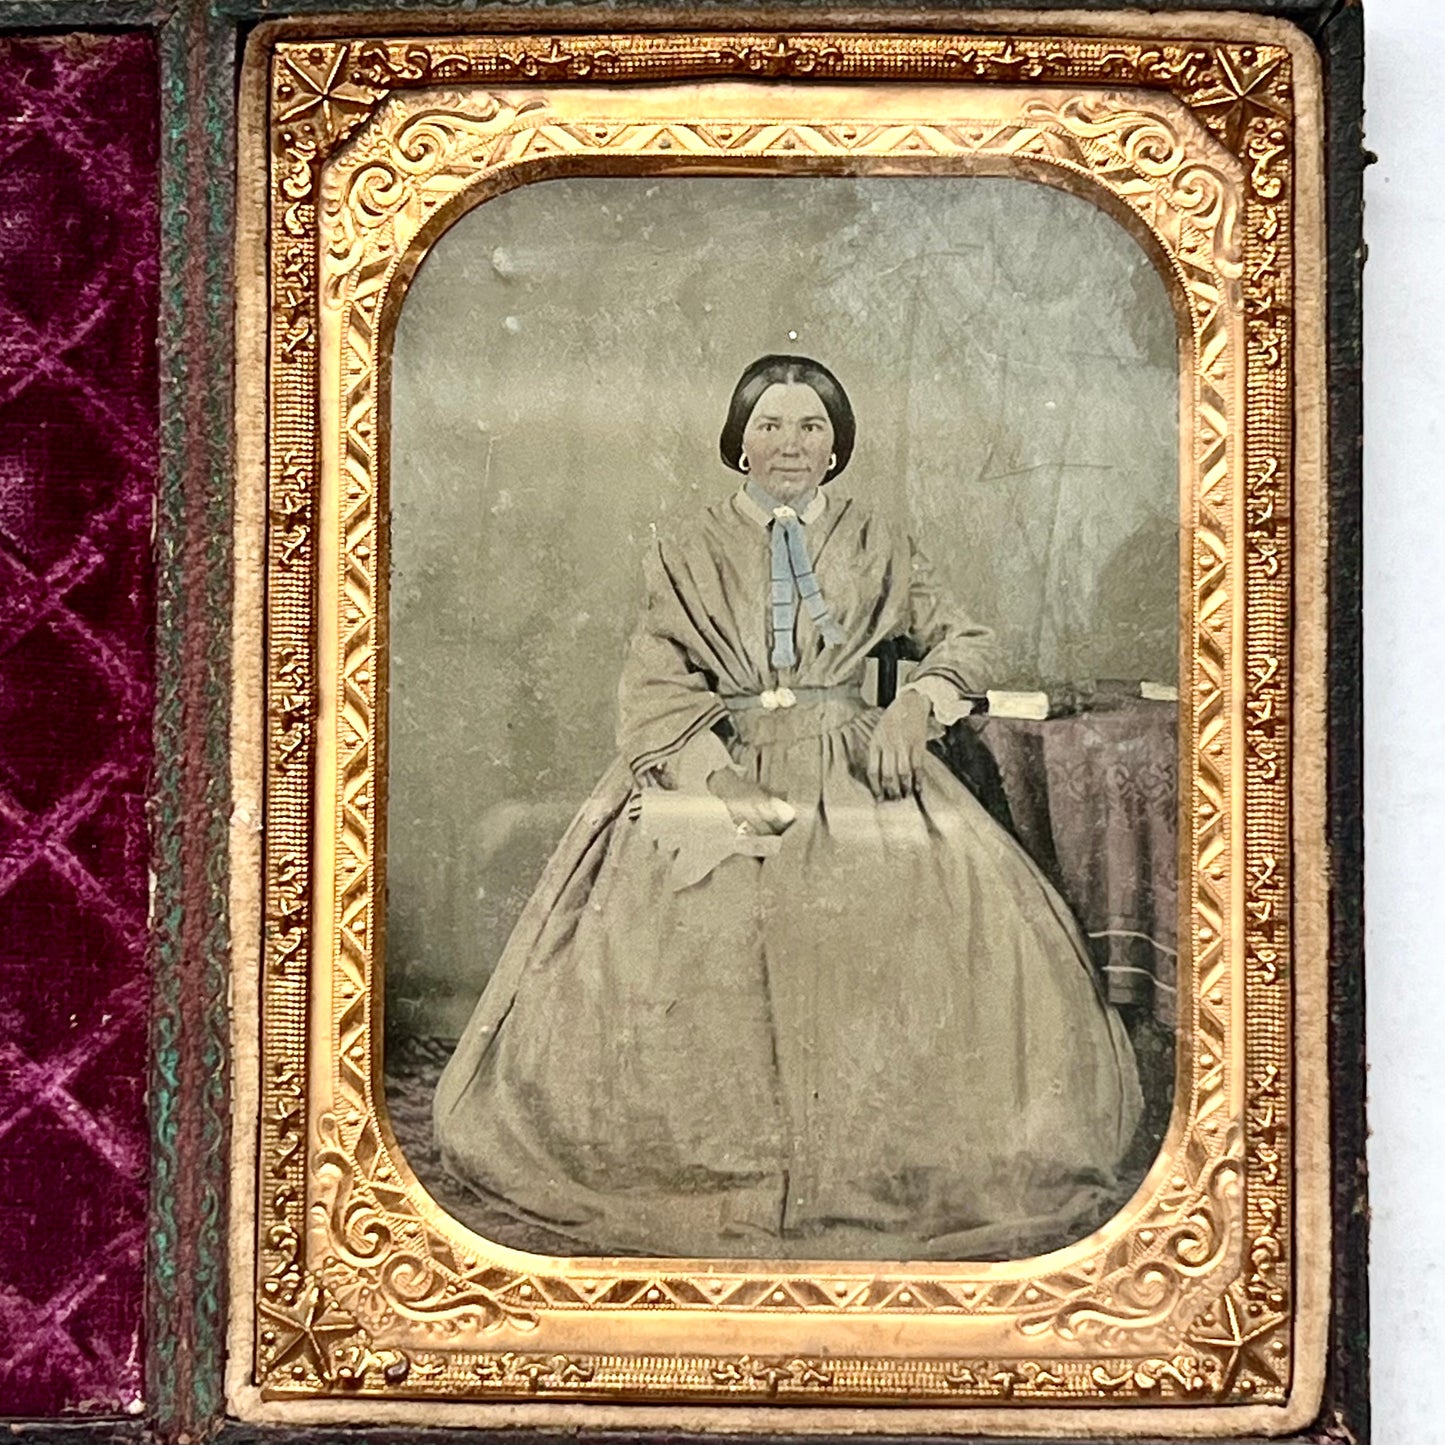 约 1850 年代精美的四分之一板古董银版照相术。原装皮革和天鹅绒盒，配精美黄铜垫